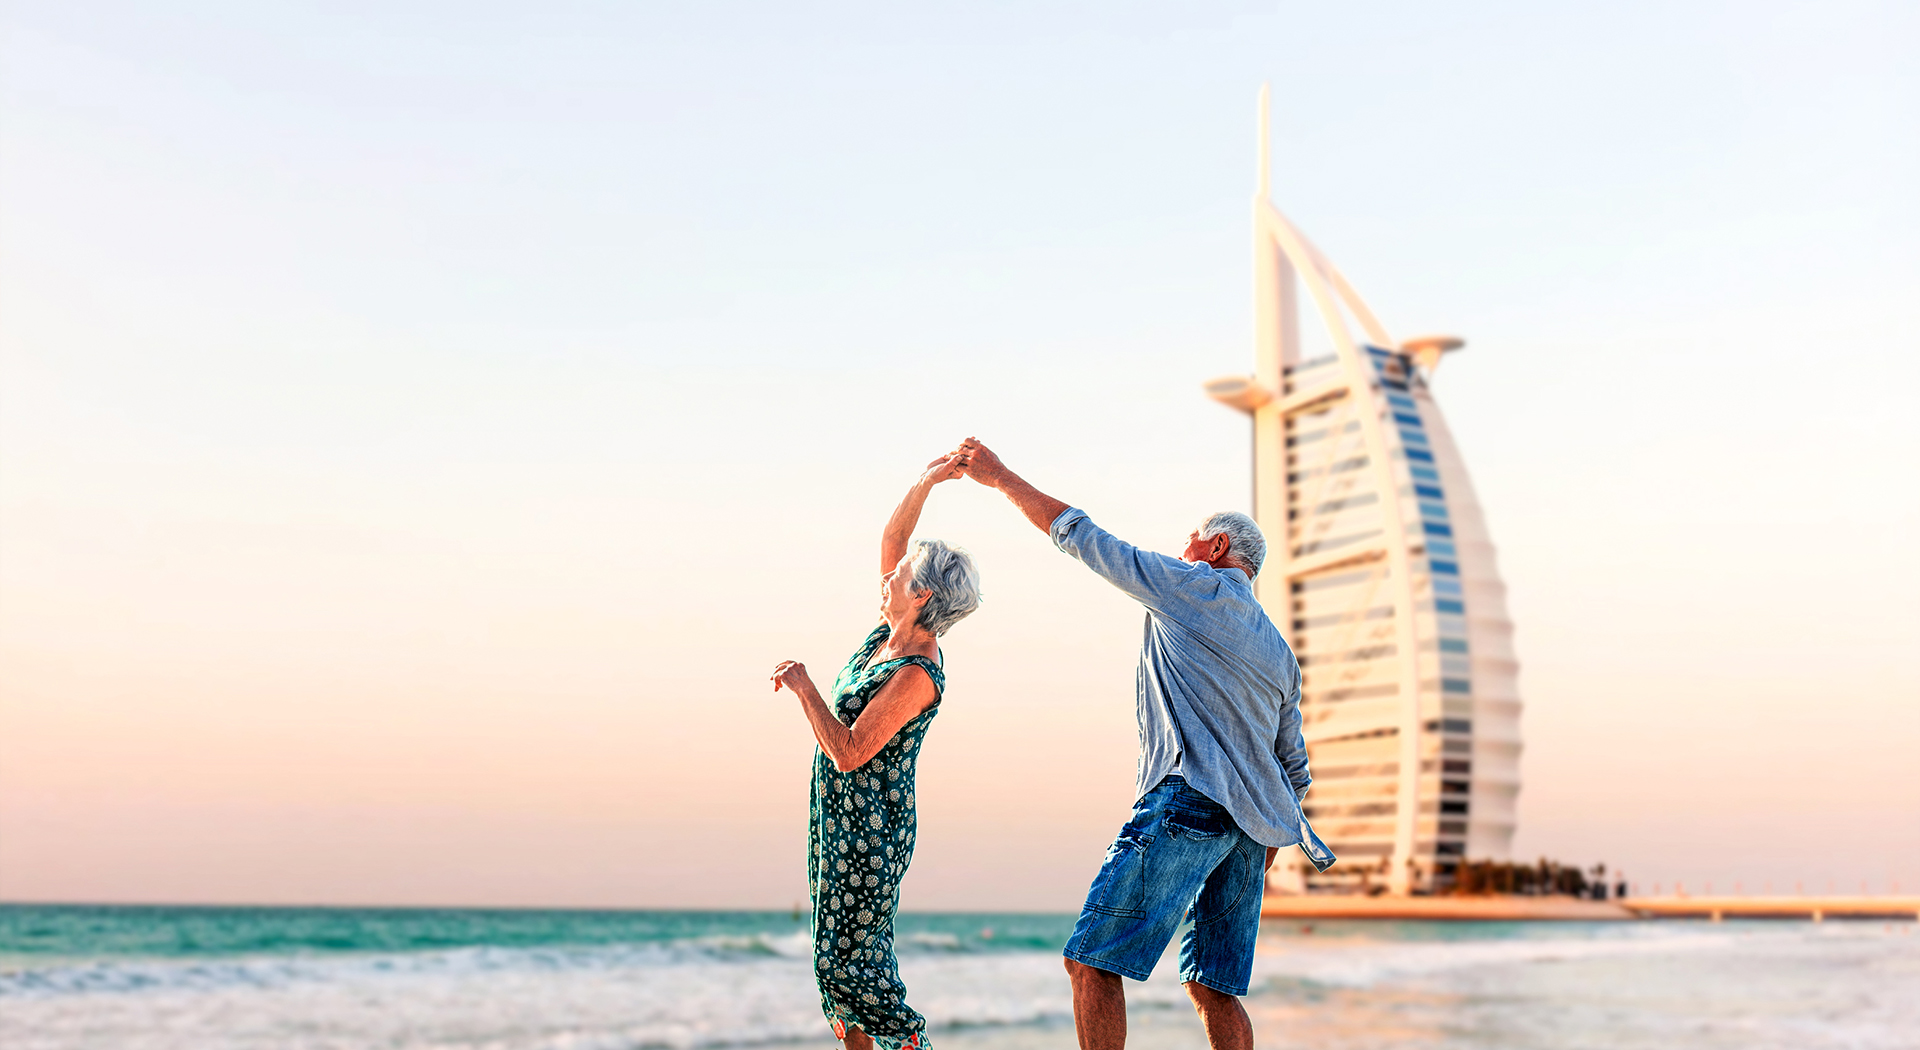 New UAE residency visa announced for retirees